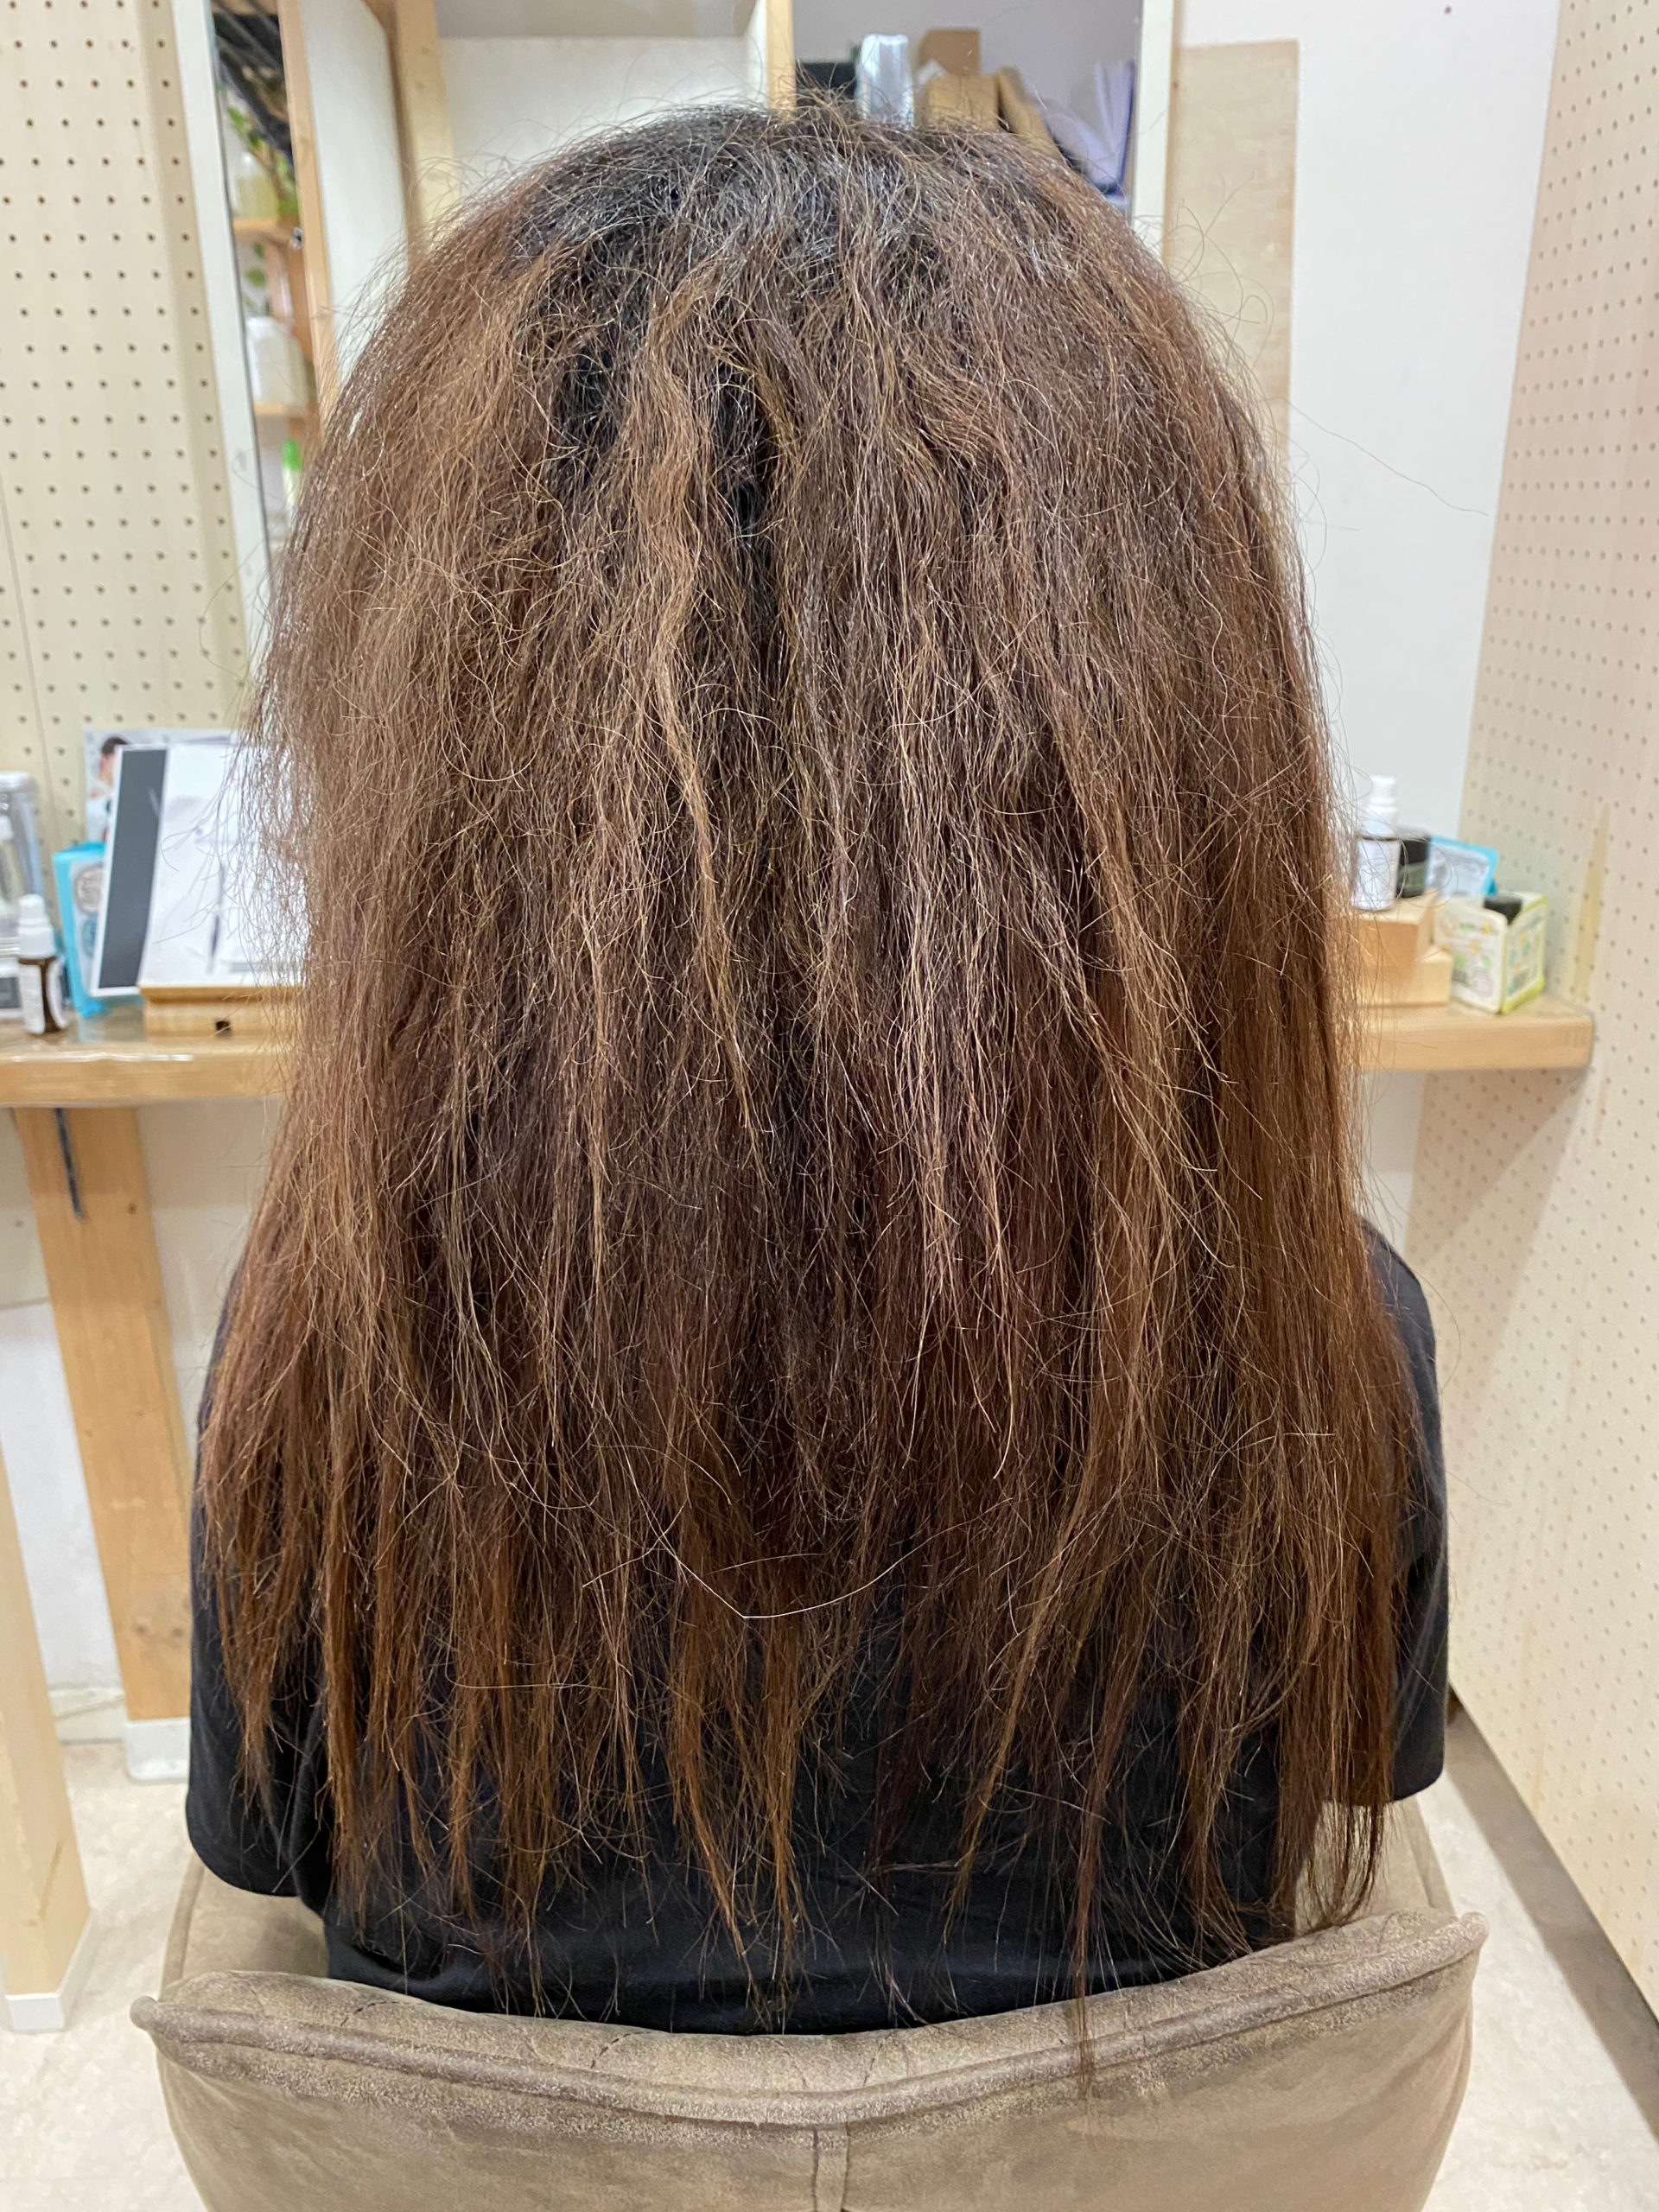 髪のチリつきを直す【ビビリ矯正】で艶髪ストレートヘア。原宿・表参道『髪のお悩みを解決するヘアケア美容師の挑戦』